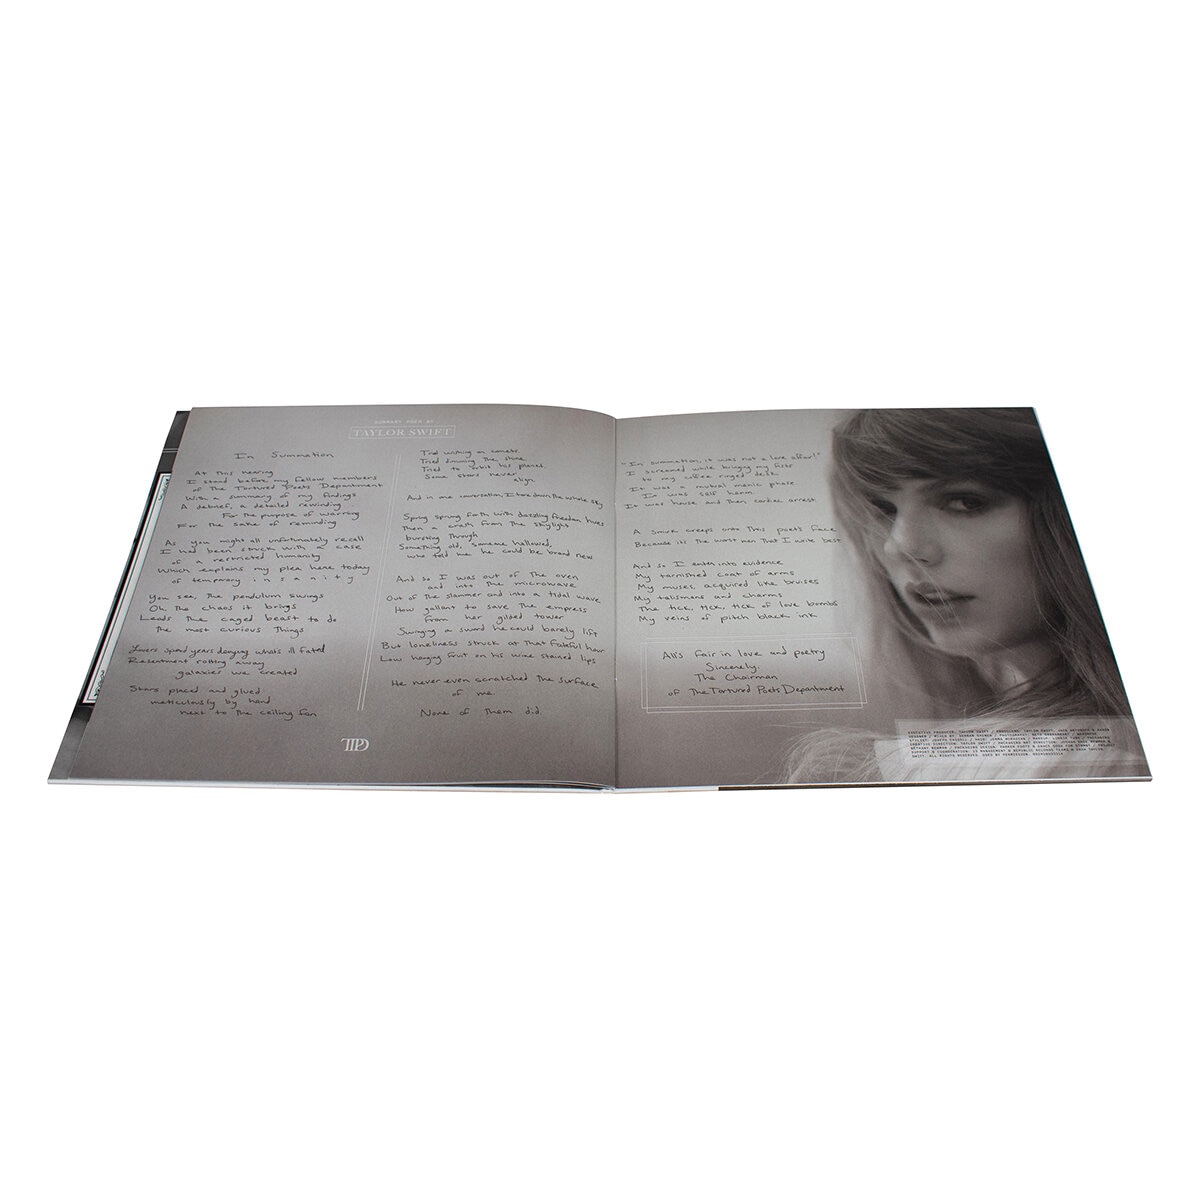 Taylor Swift, The Tortured Poets Department "The manuscript" LP ( 2 Vinilos)